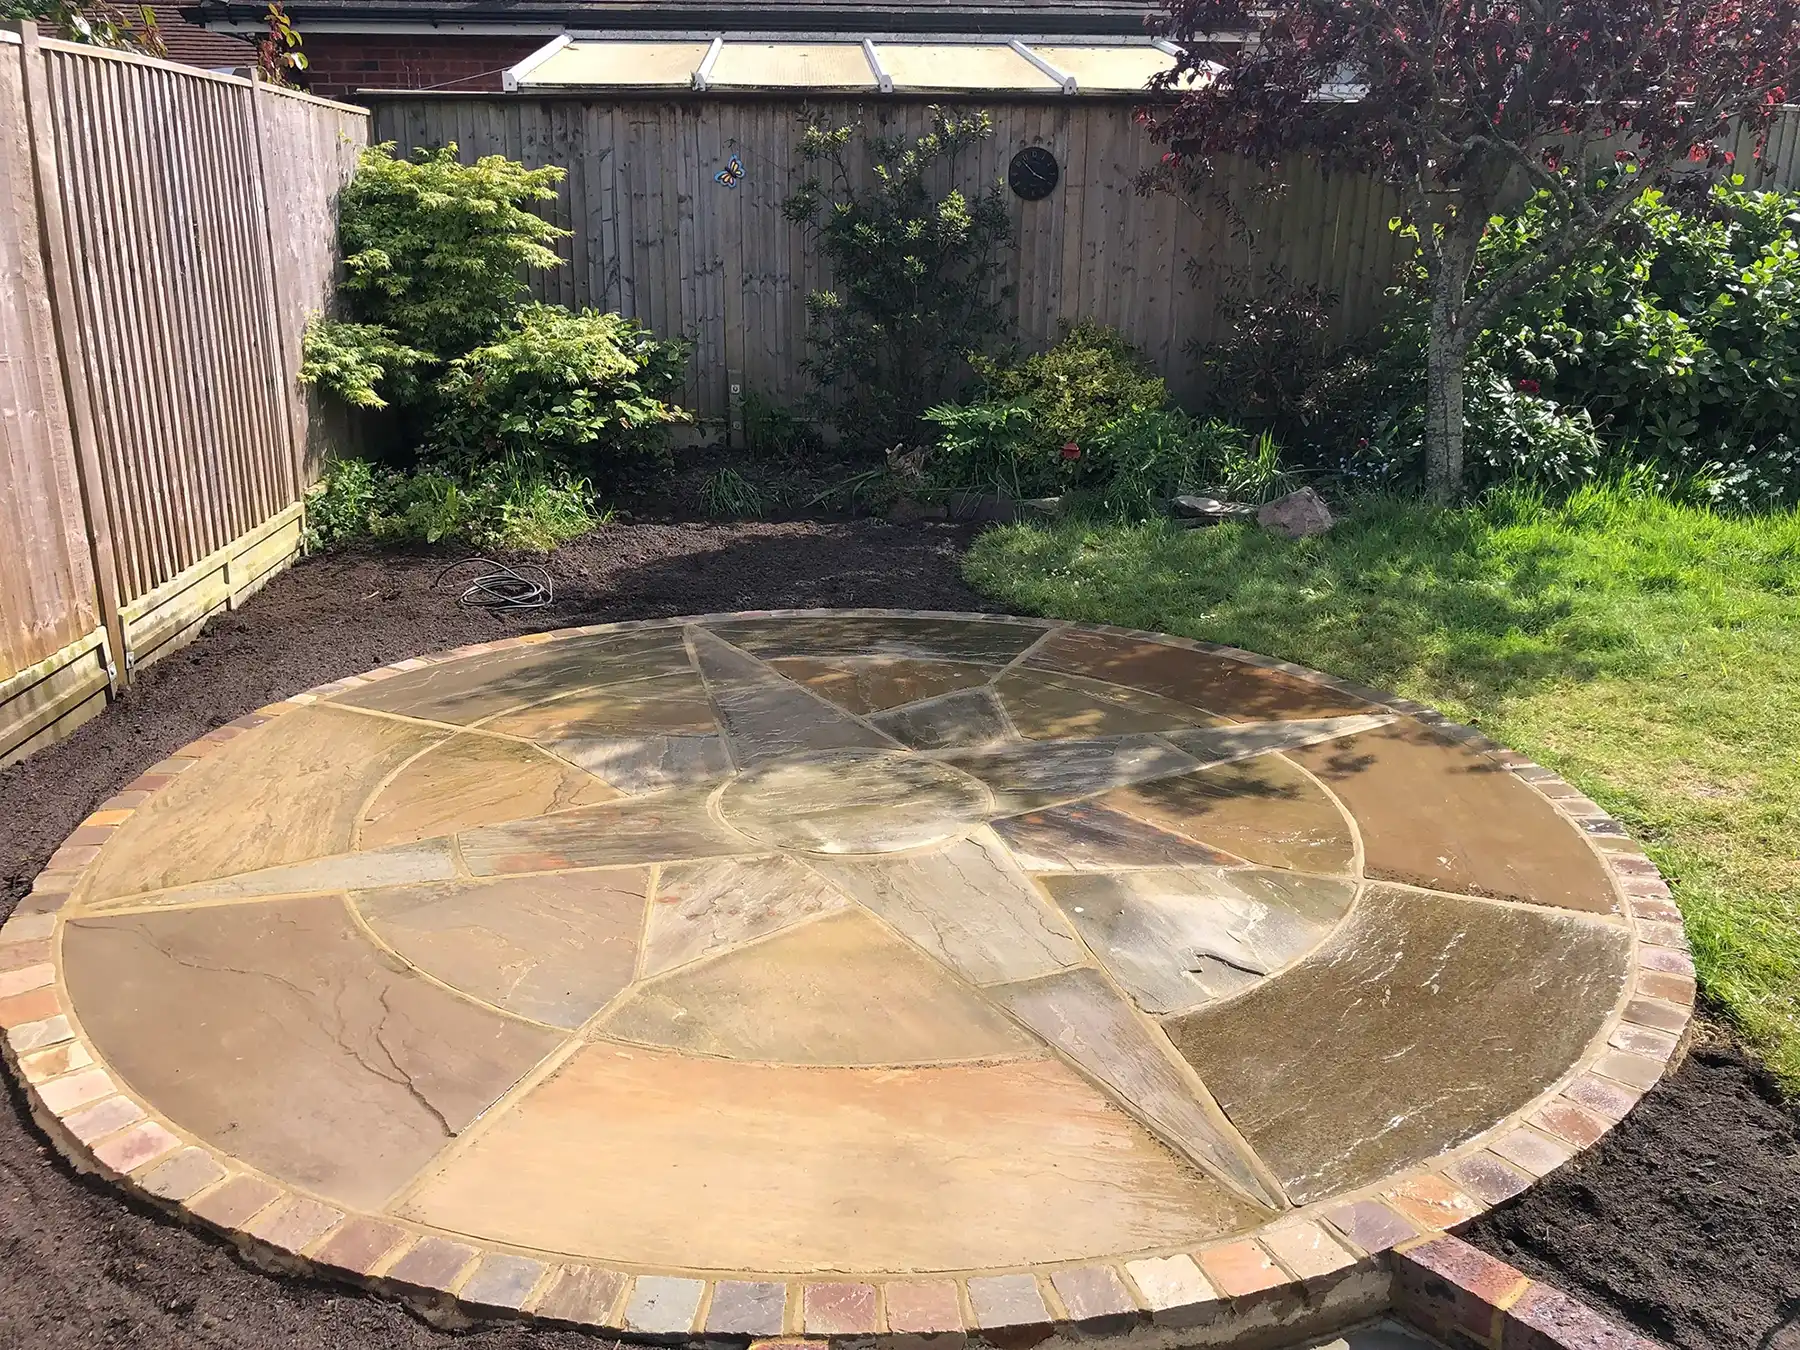 a circular stone patio in a back yard